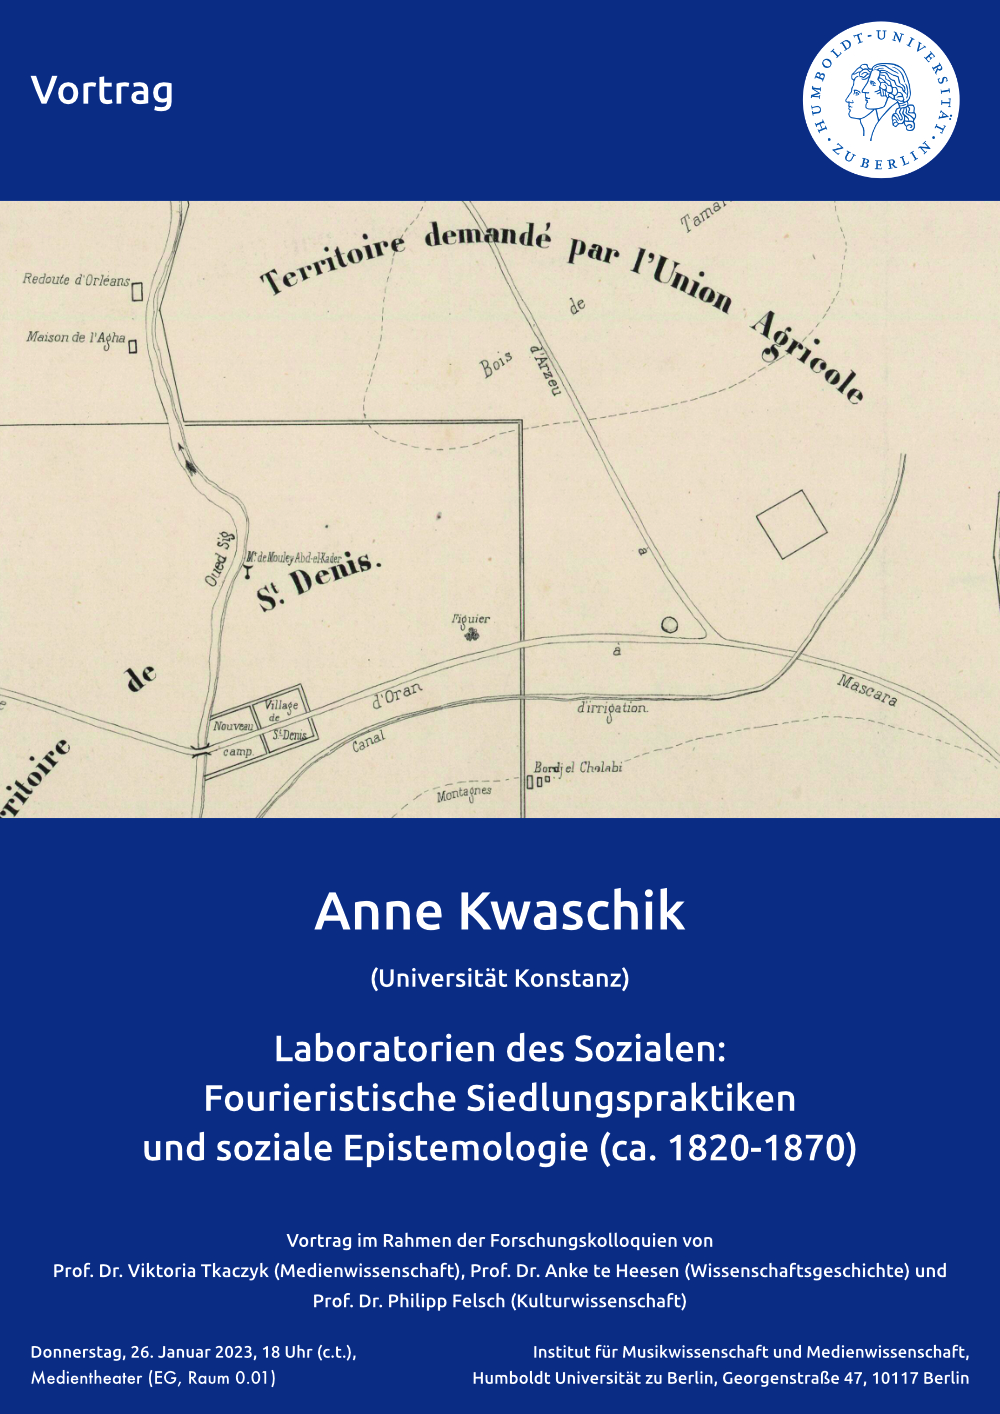 Laboratorien des Sozialen:Fourieristische Siedlungspraktikenund soziale Epistemologie (ca. 1820-1870)